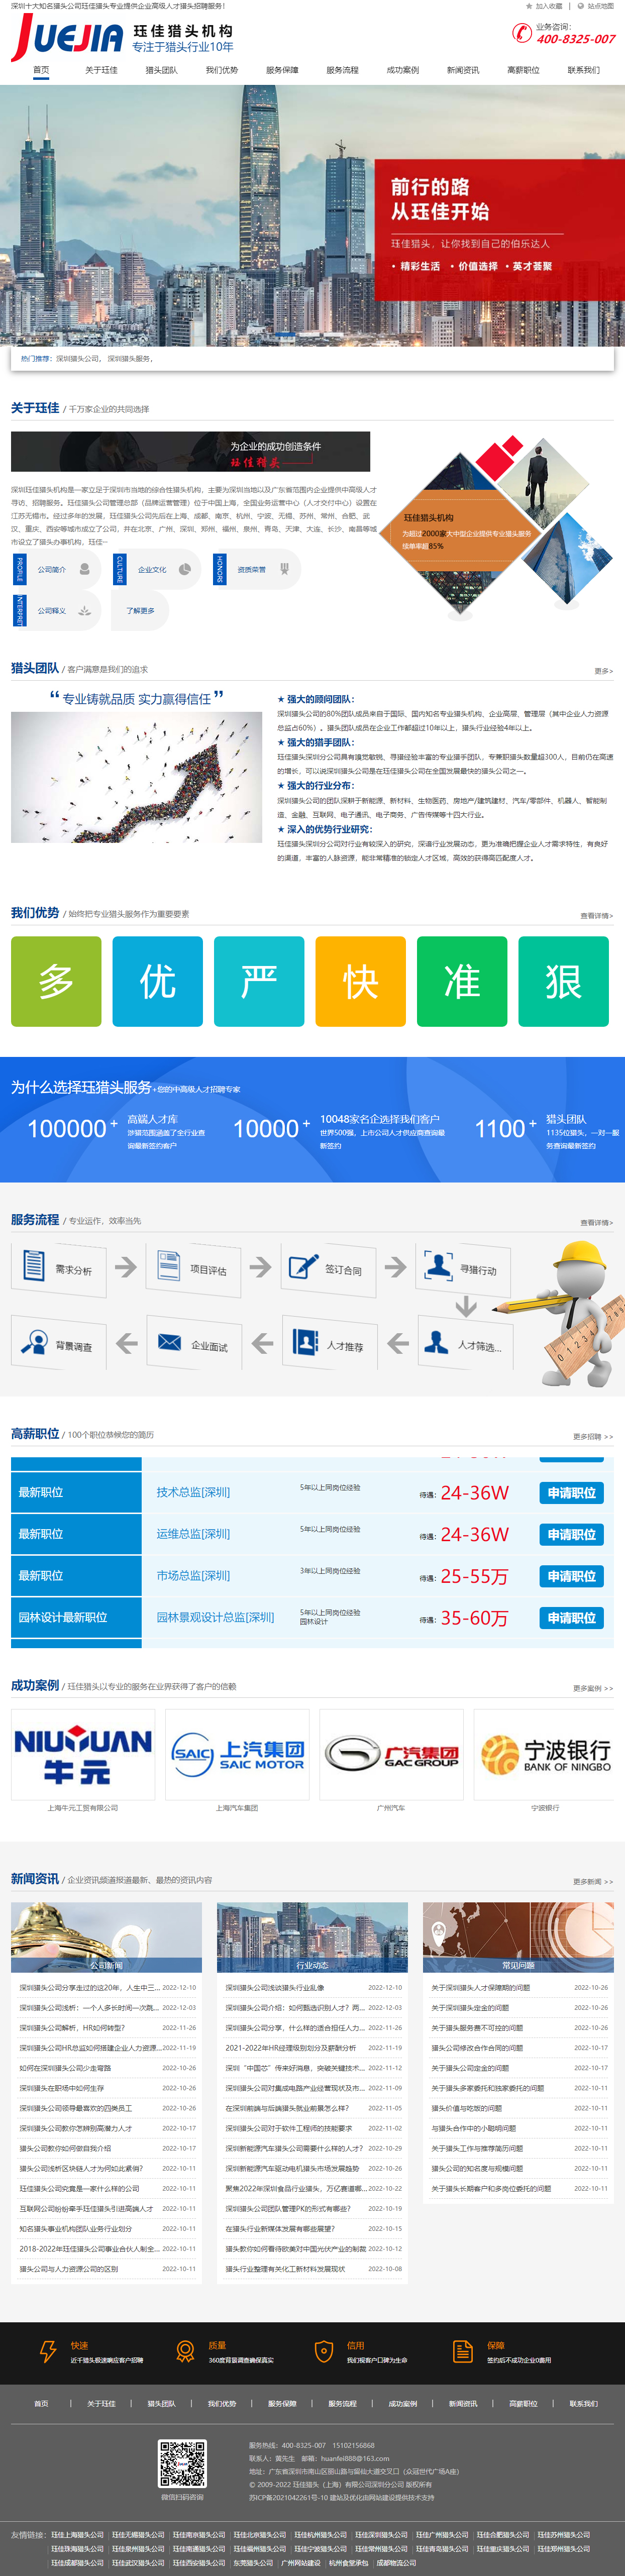 玨*深圳獵頭公司營銷型網站 PC端預覽圖